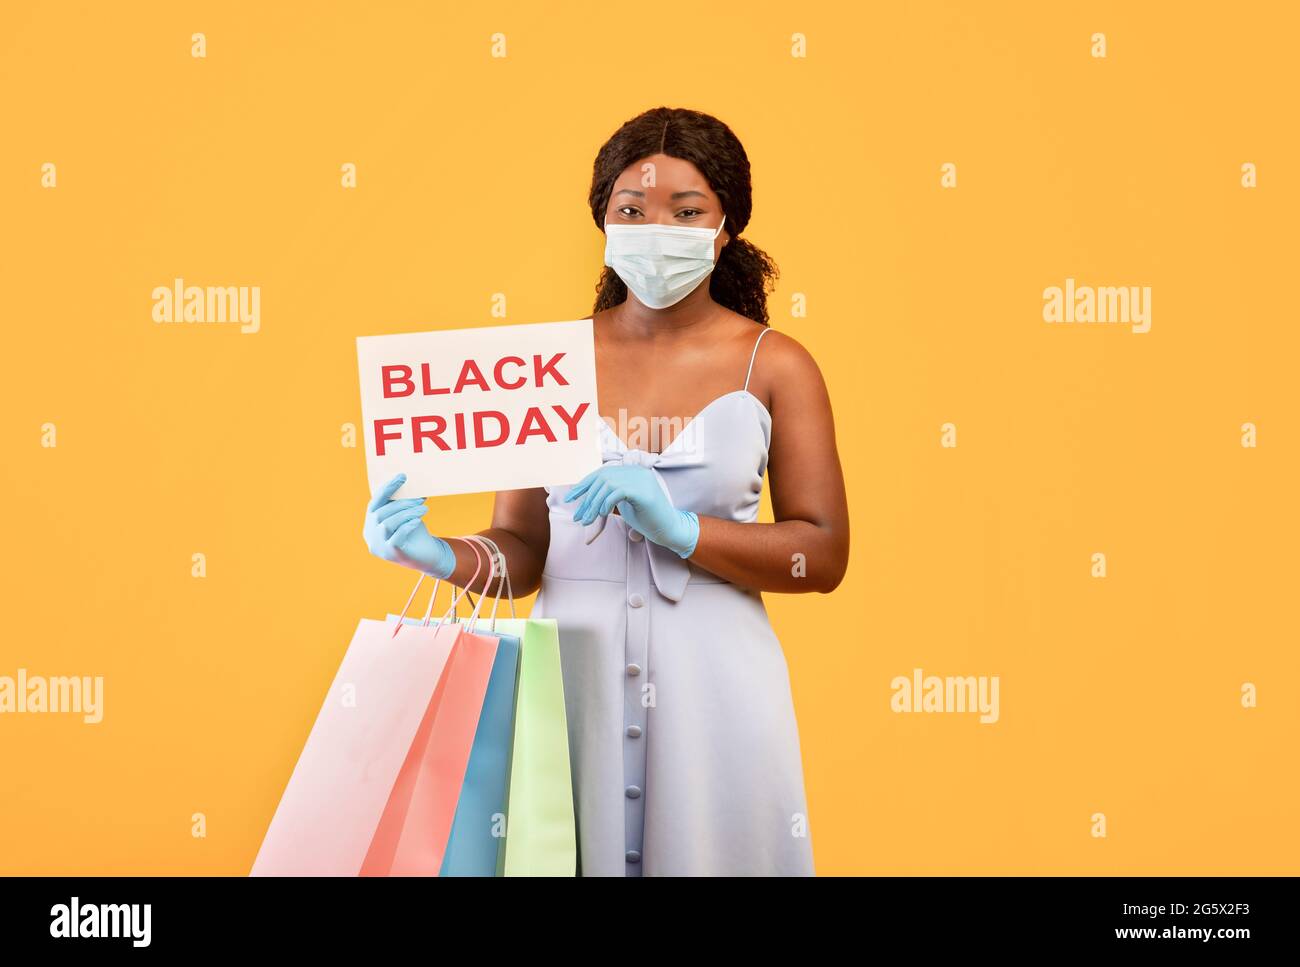 Schwarze Frau trägt Gesichtsmaske, hält SCHWARZES FREITAGSSCHILD, hält Einkaufstaschen, kauft während des Coronavirus Dinge Stockfoto